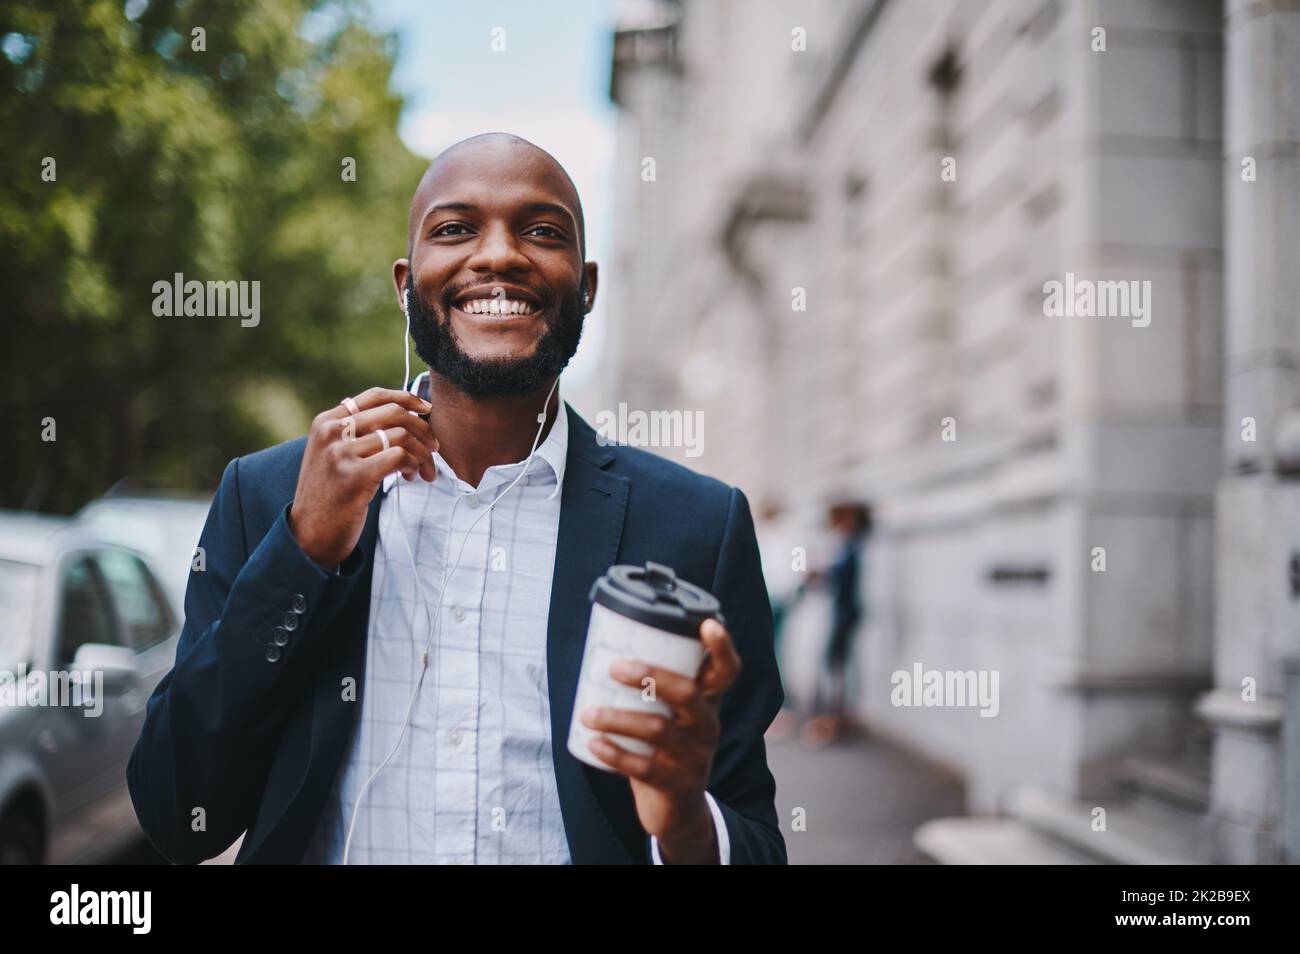 Questa pausa caffè mi ha ispirato di nuovo. Immagine di un uomo d'affari che tiene un caffè e ascolta la musica attraverso gli auricolari mentre cammina per la città. Foto Stock